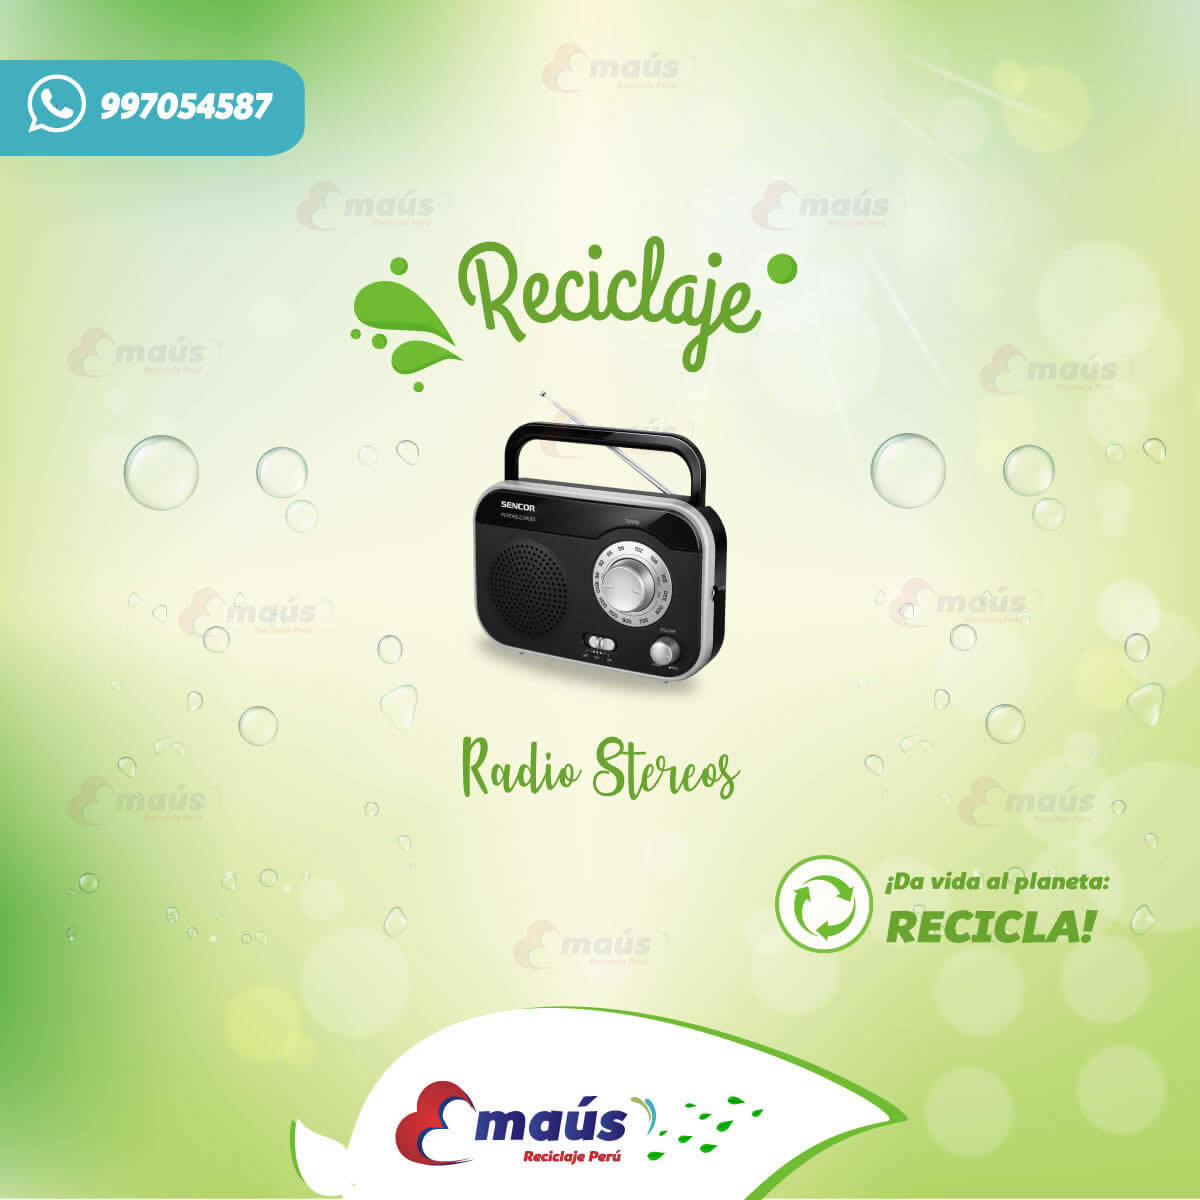 Recicla radios stereos